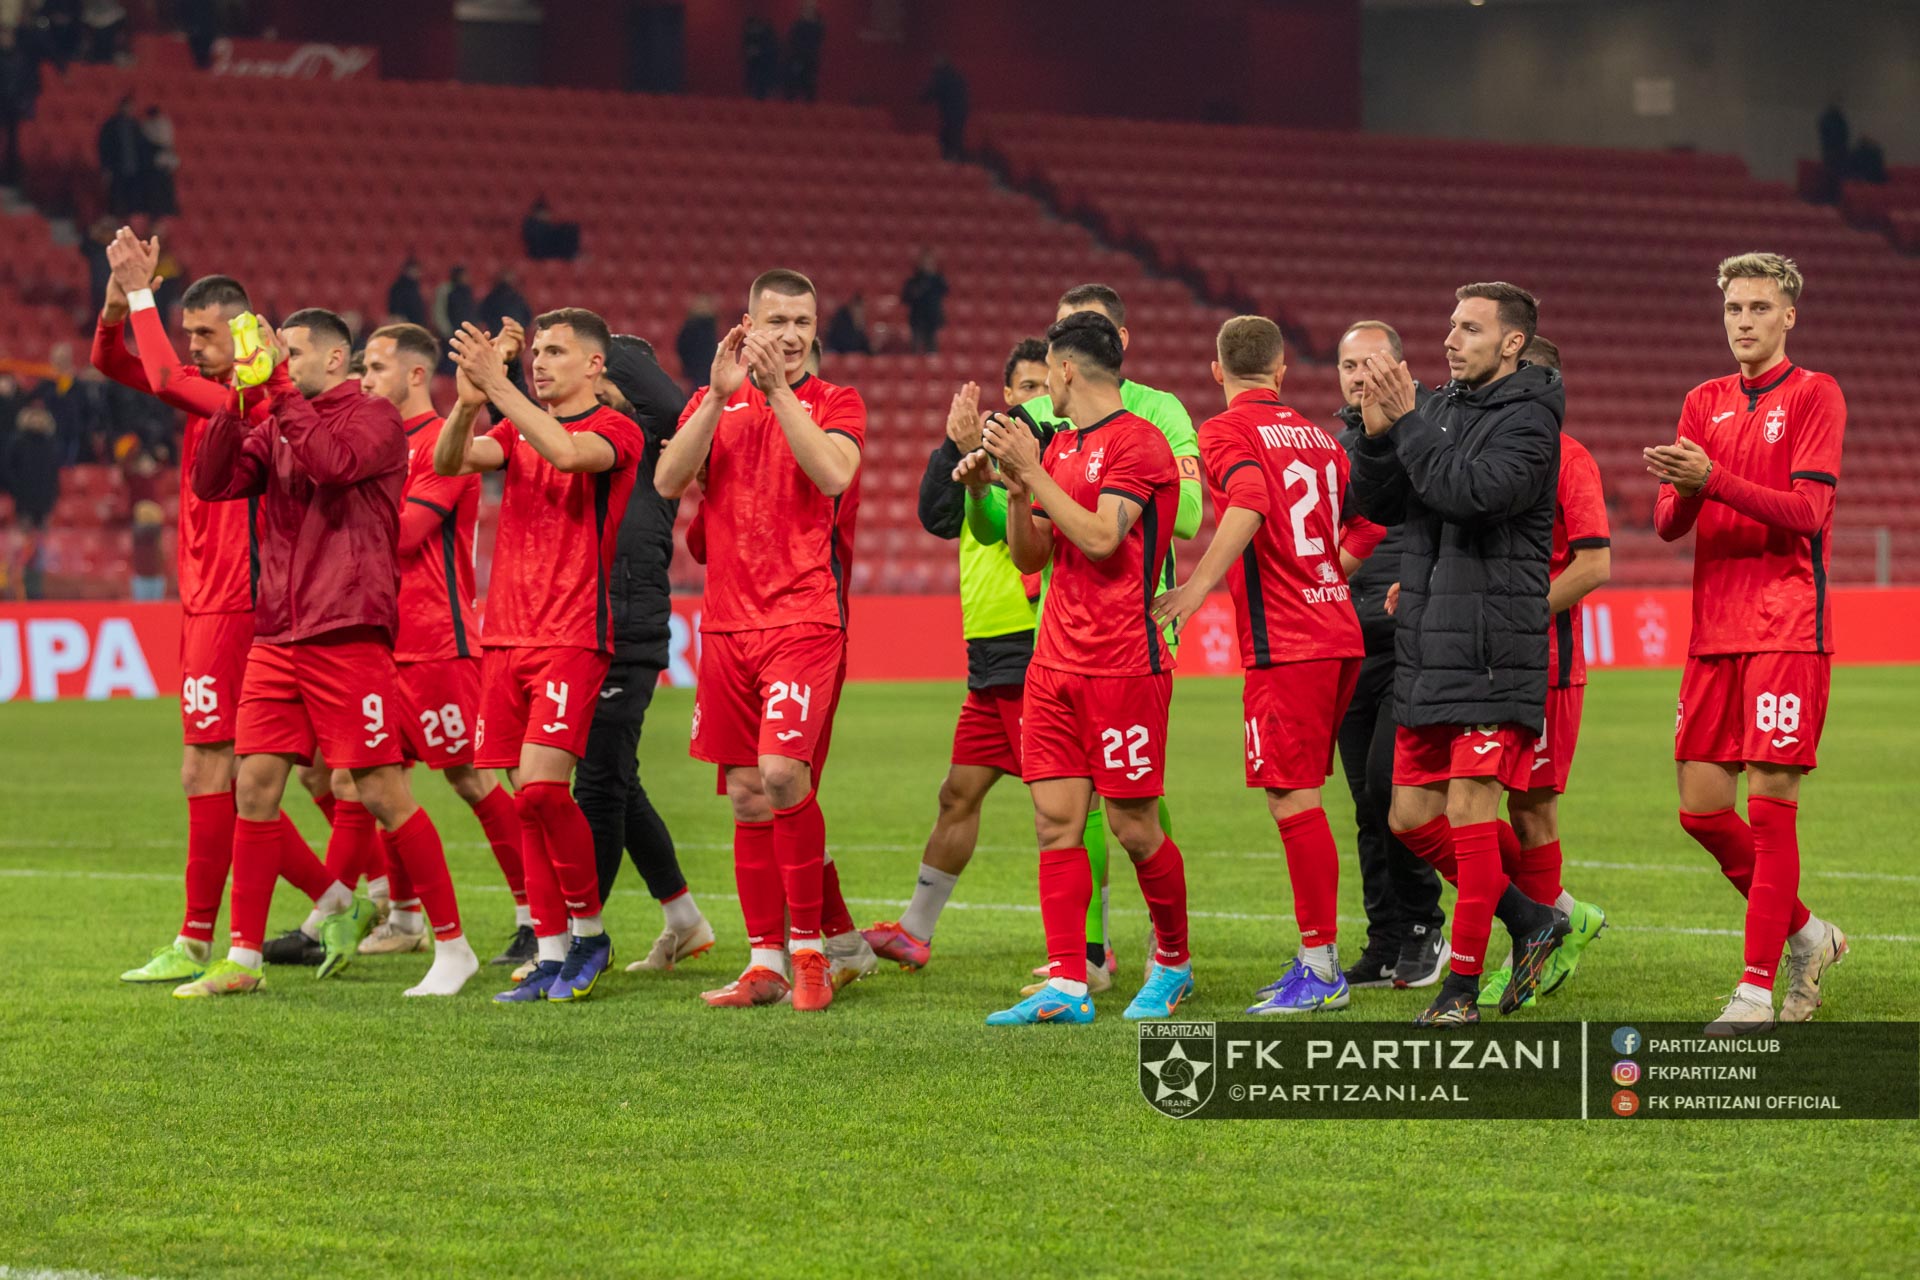 Përballet me Vllazninë në “Air Albania”, Partizani nxjerr në shitje biletat